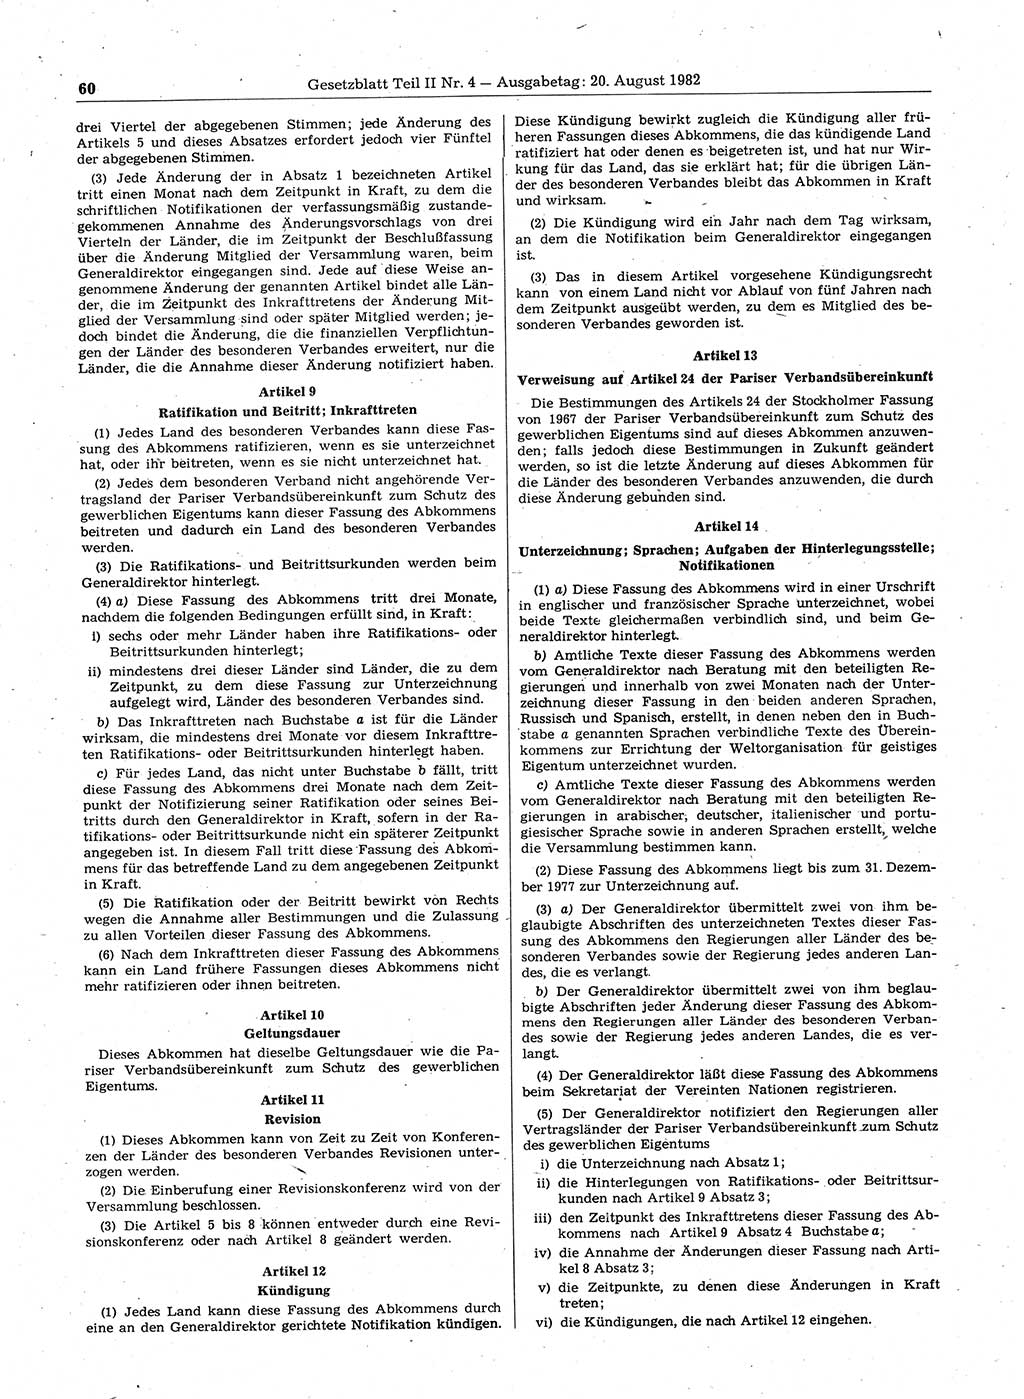 Gesetzblatt (GBl.) der Deutschen Demokratischen Republik (DDR) Teil ⅠⅠ 1982, Seite 60 (GBl. DDR ⅠⅠ 1982, S. 60)